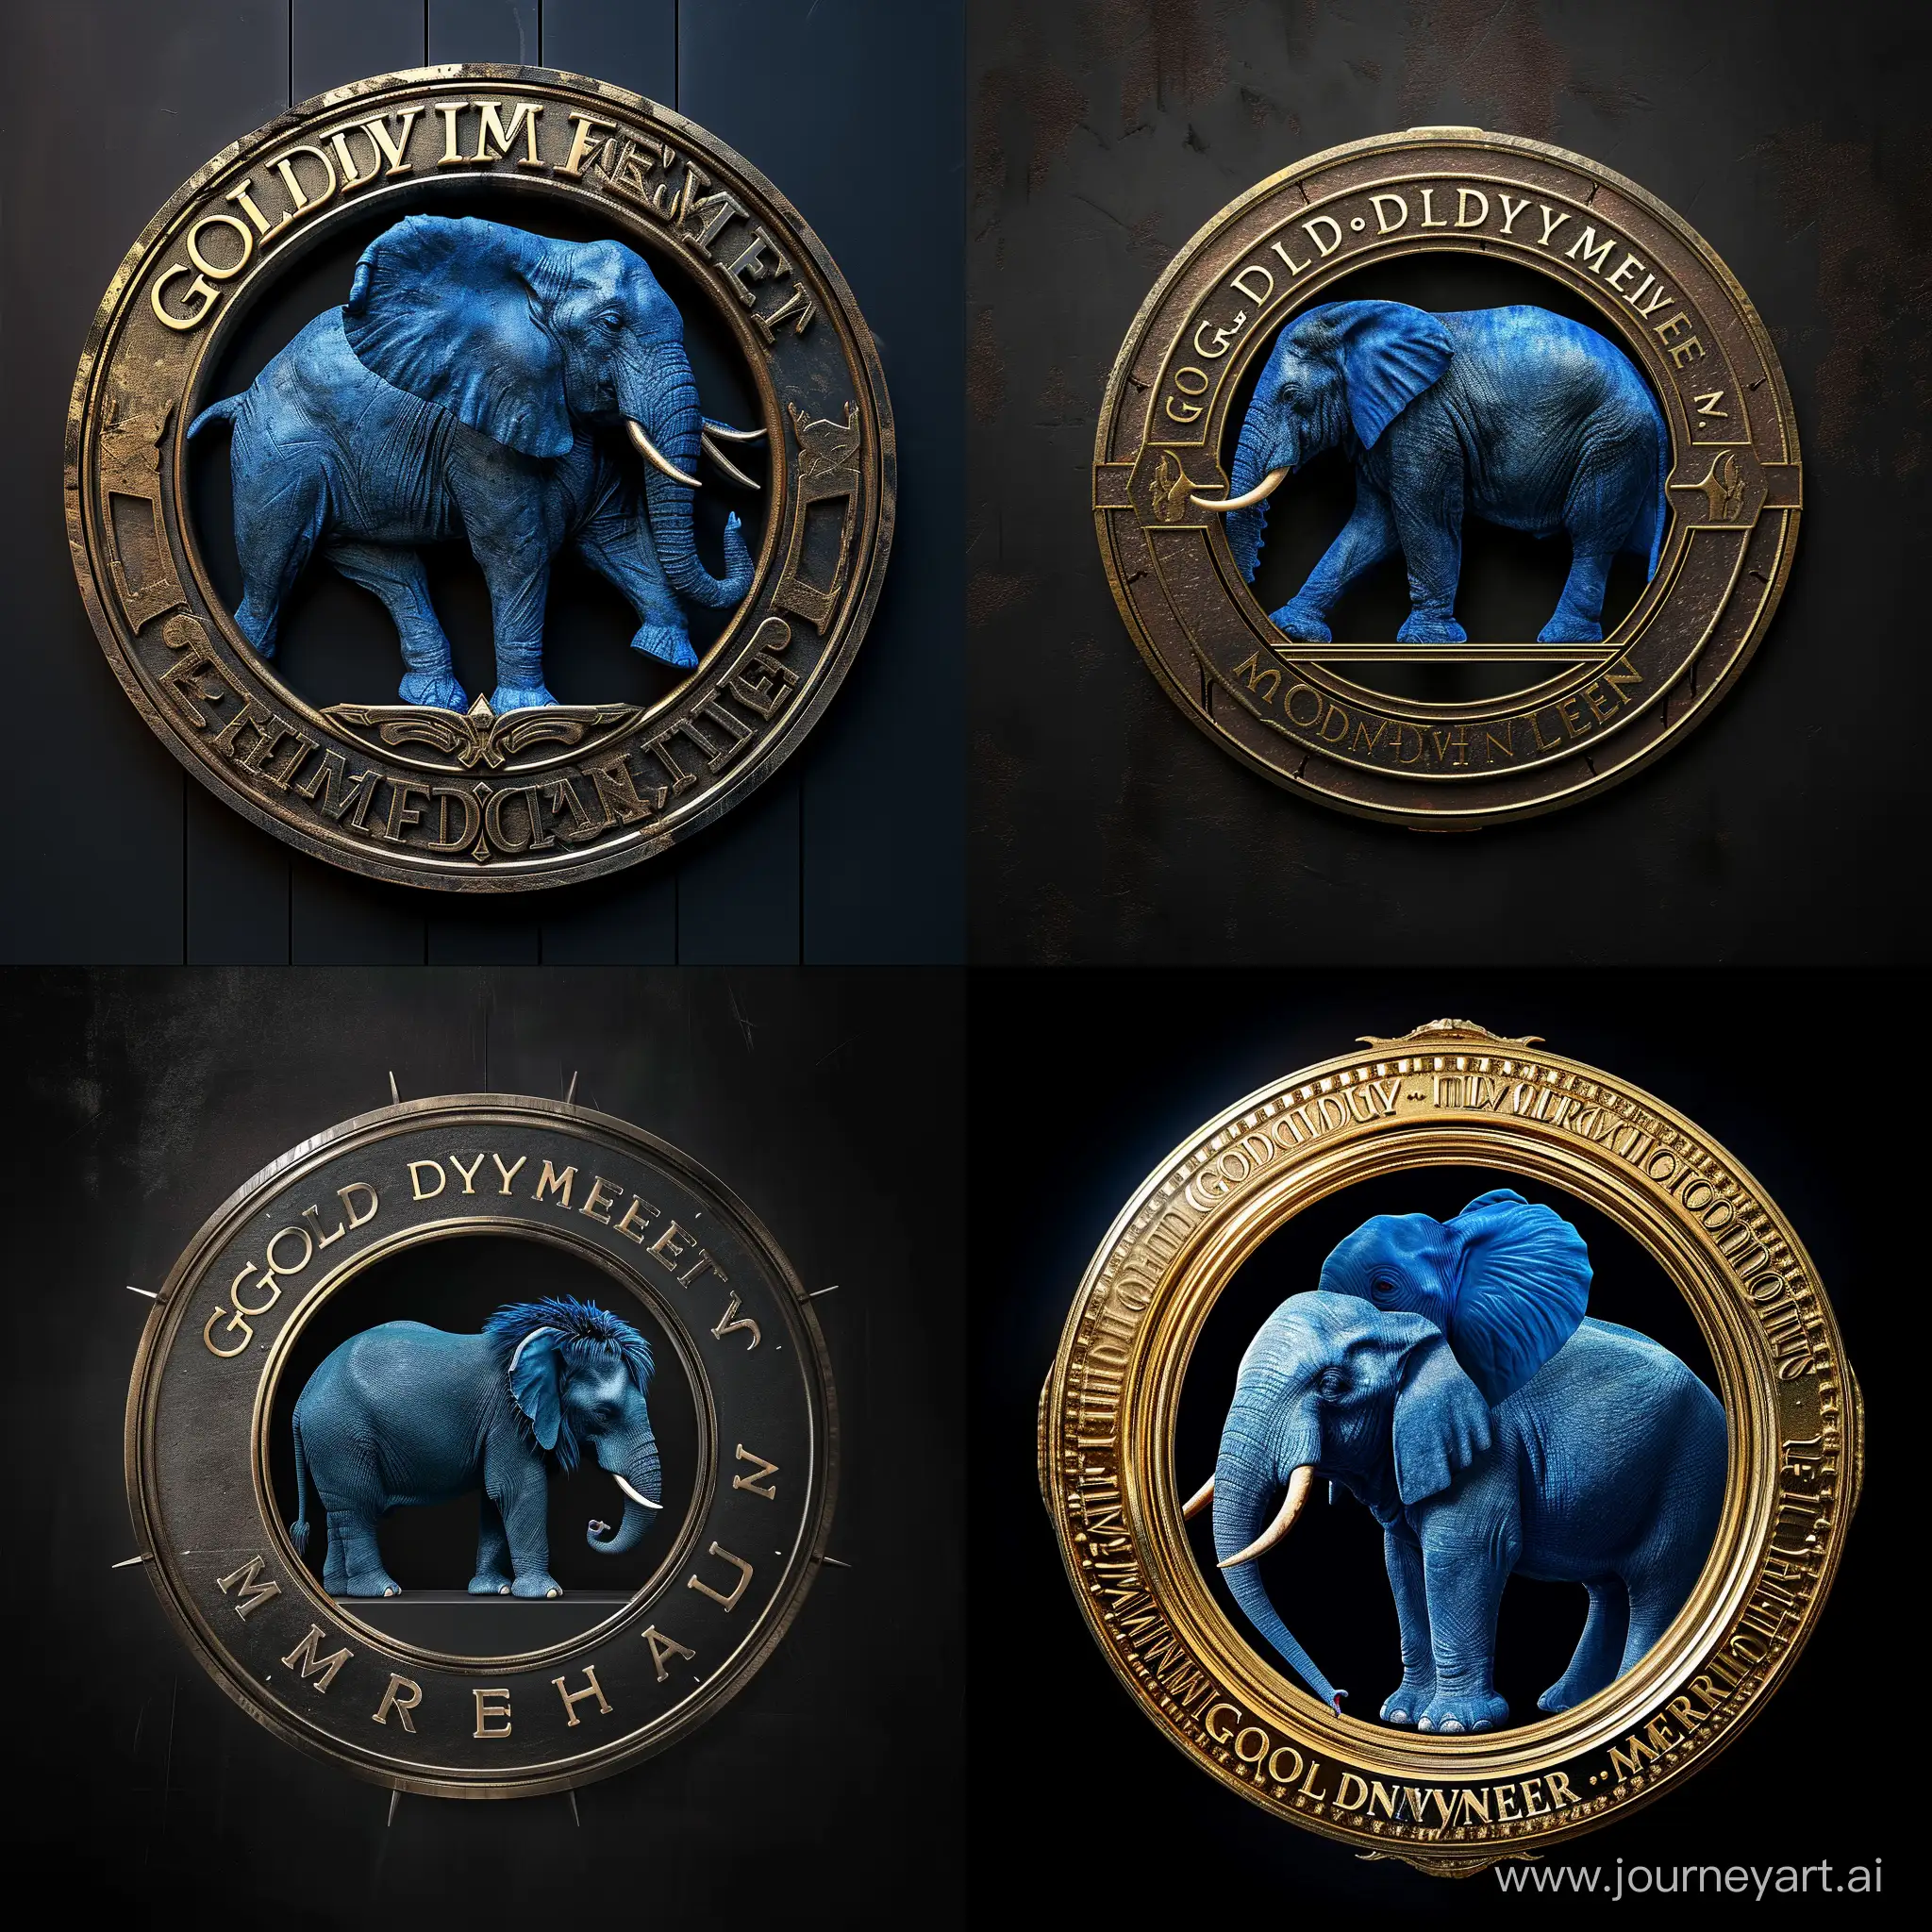 metro Goldwyn Meyer logo but inside it a blue elephant instead of the lion, ultra realistic details